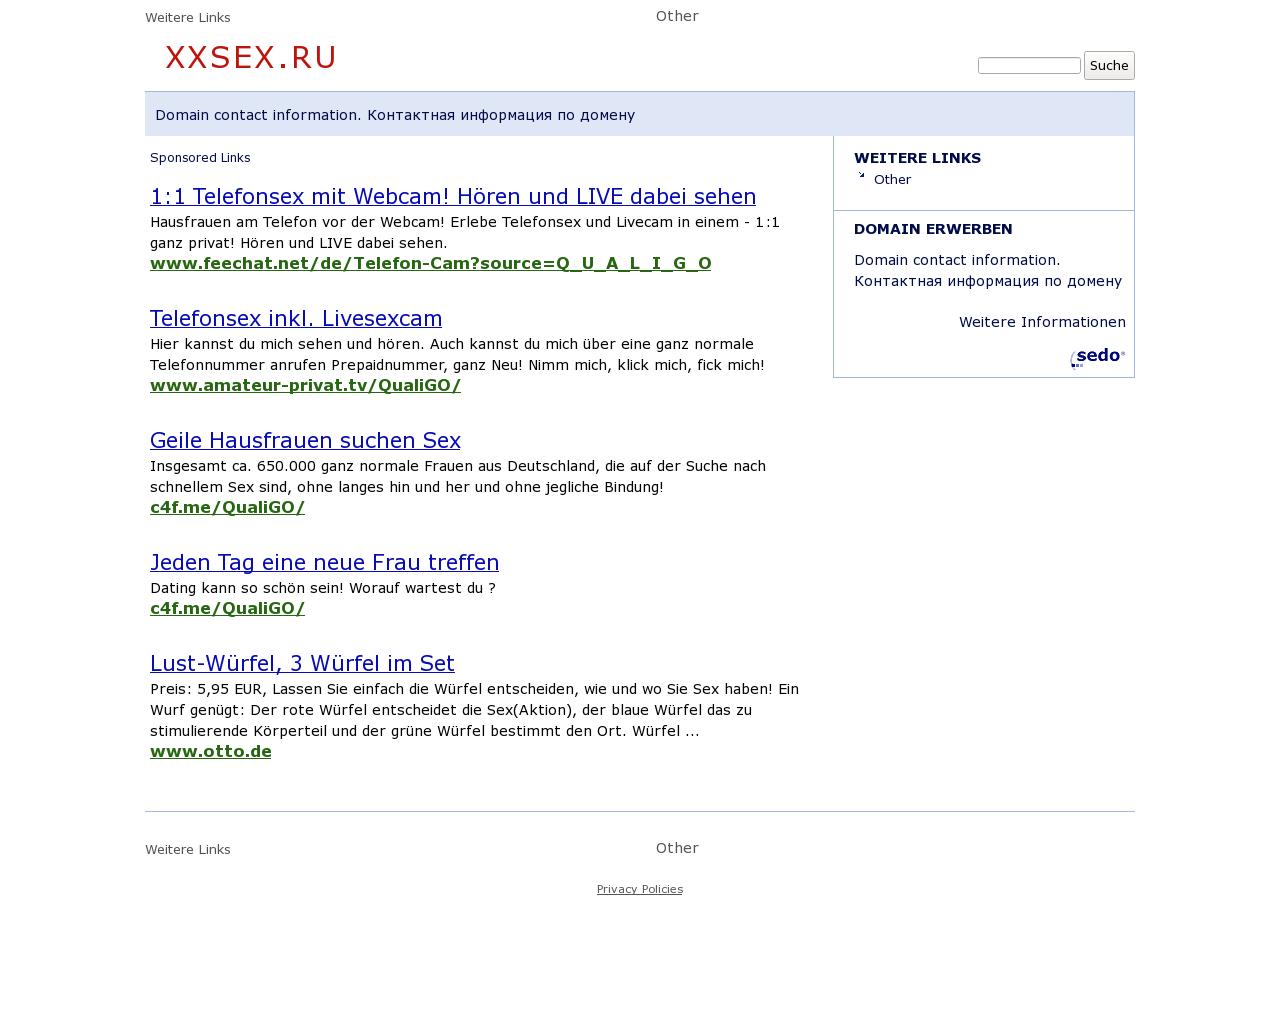 Изображение сайта xxsex.ru в разрешении 1280x1024